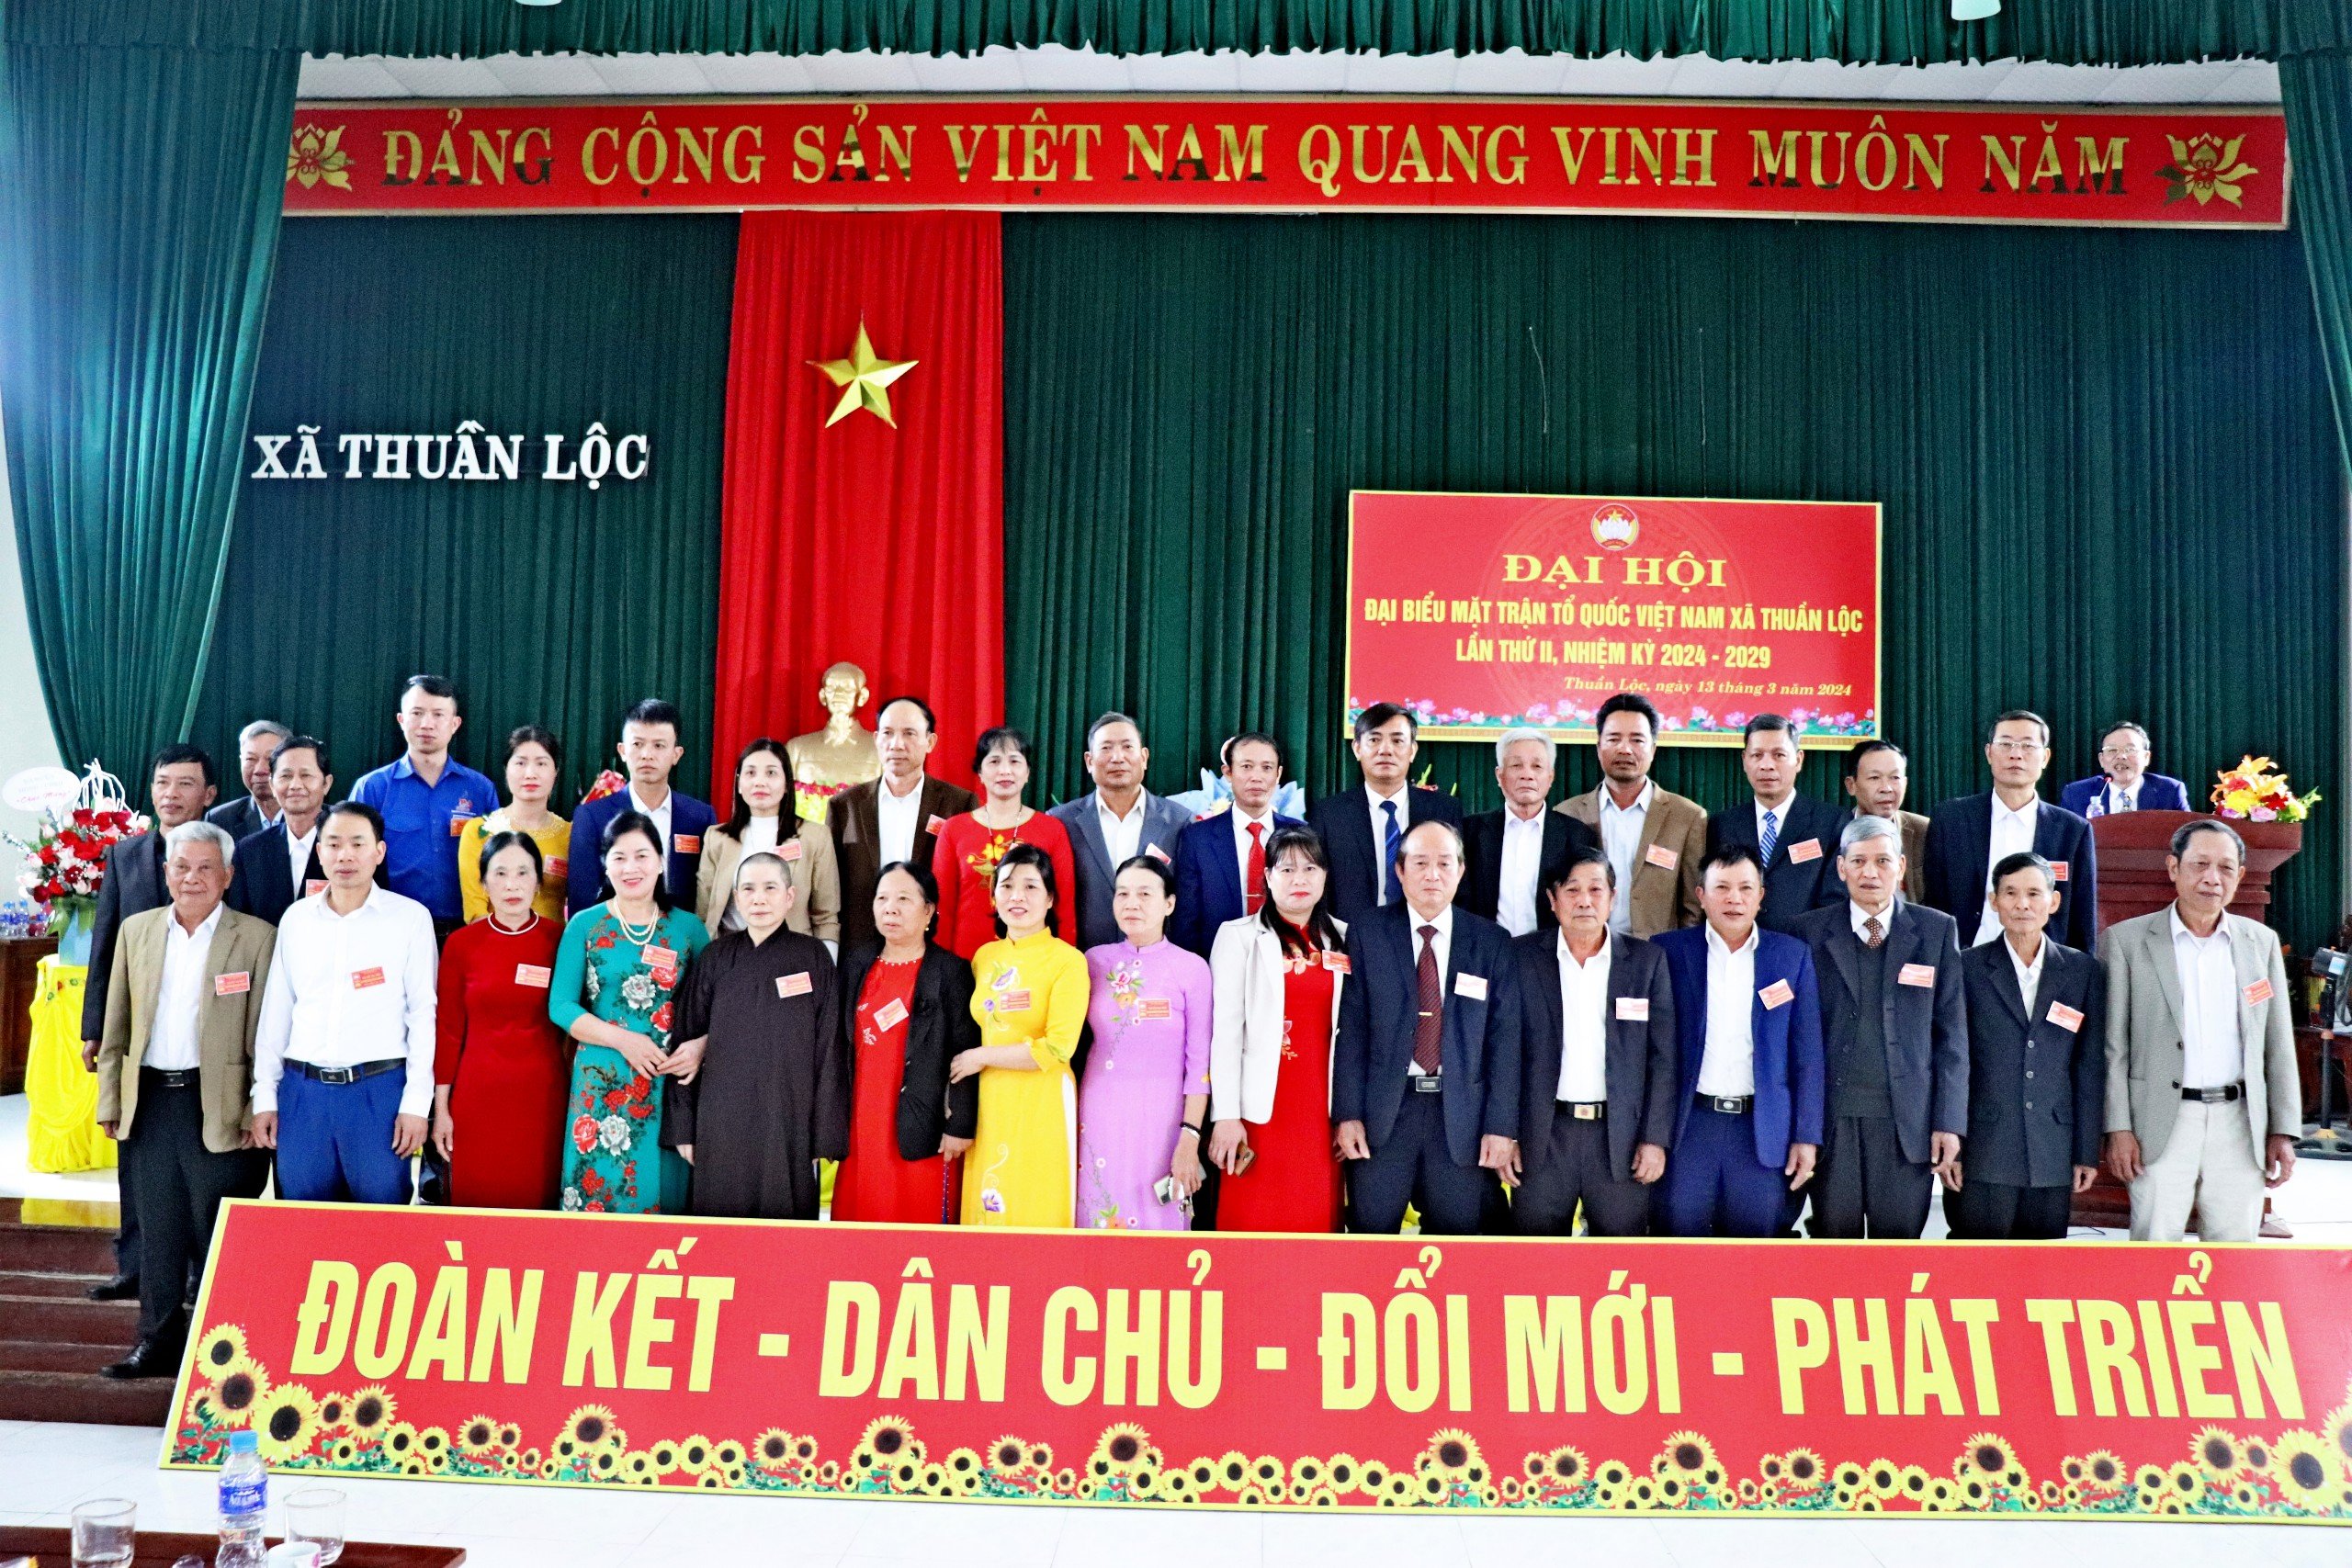 Mặt Trần Tổ Quốc xã Thuần Lộc tổ chức Đại hội đại biểu lần thứ II, nhiệm kỳ 2024 - 2029.